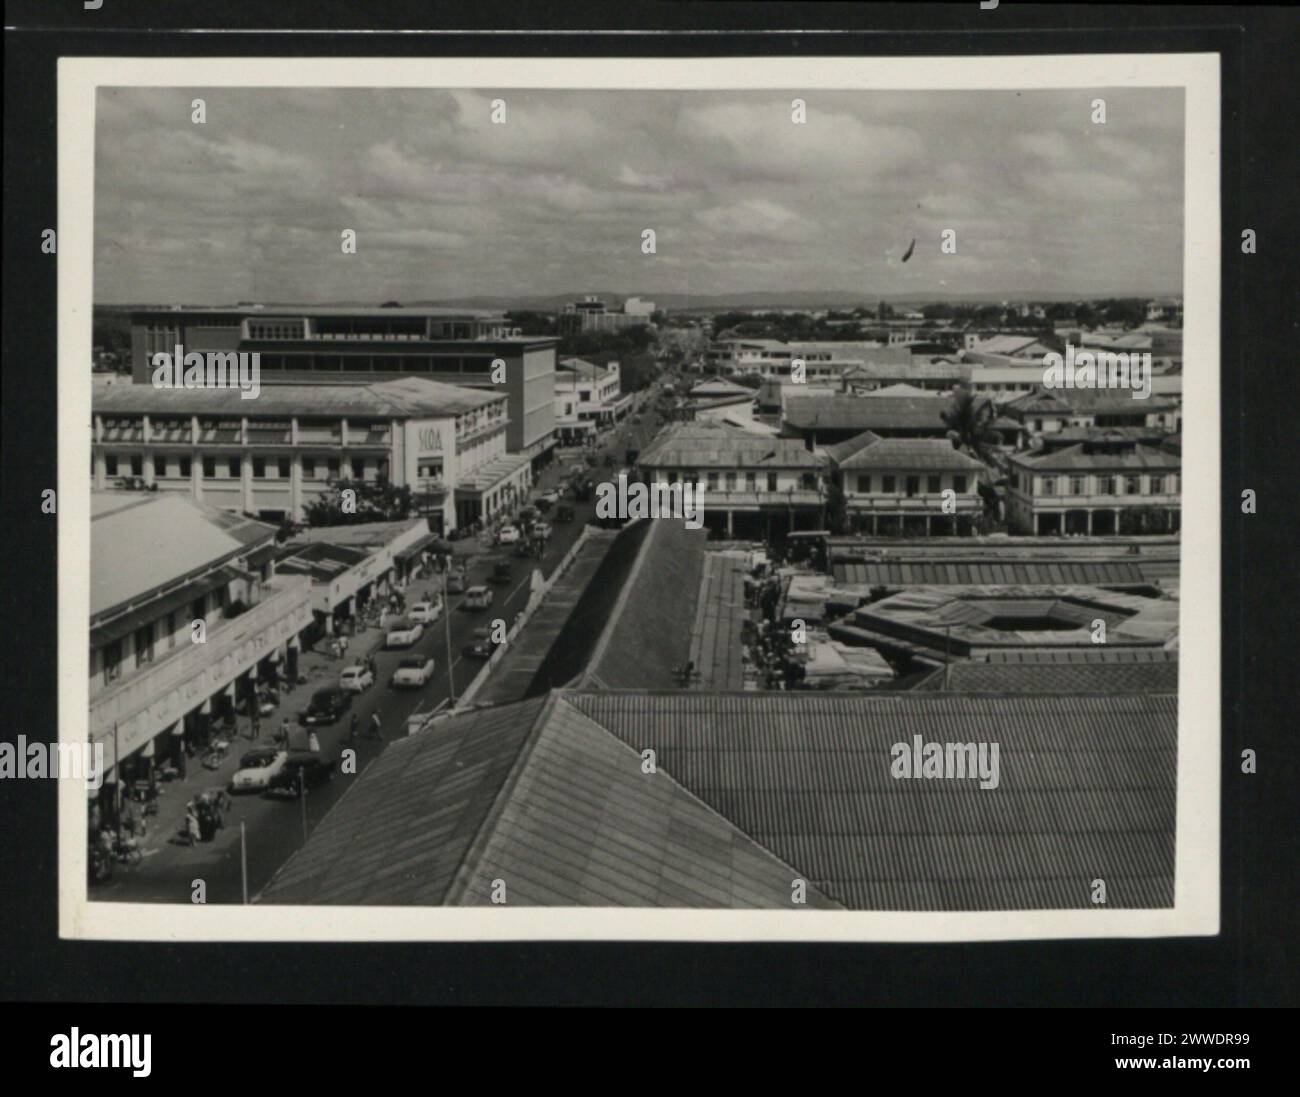 Descrizione: Station Road, Accra, guardando a nord verso Tsawan. Accra, la capitale della Gold Coast, è la casa di 150.000 persone. La città si sta sviluppando velocemente. Luogo: Gold Coast, Accra, Tsawan, Ghana Data: Gennaio 1957 africa Foto Stock